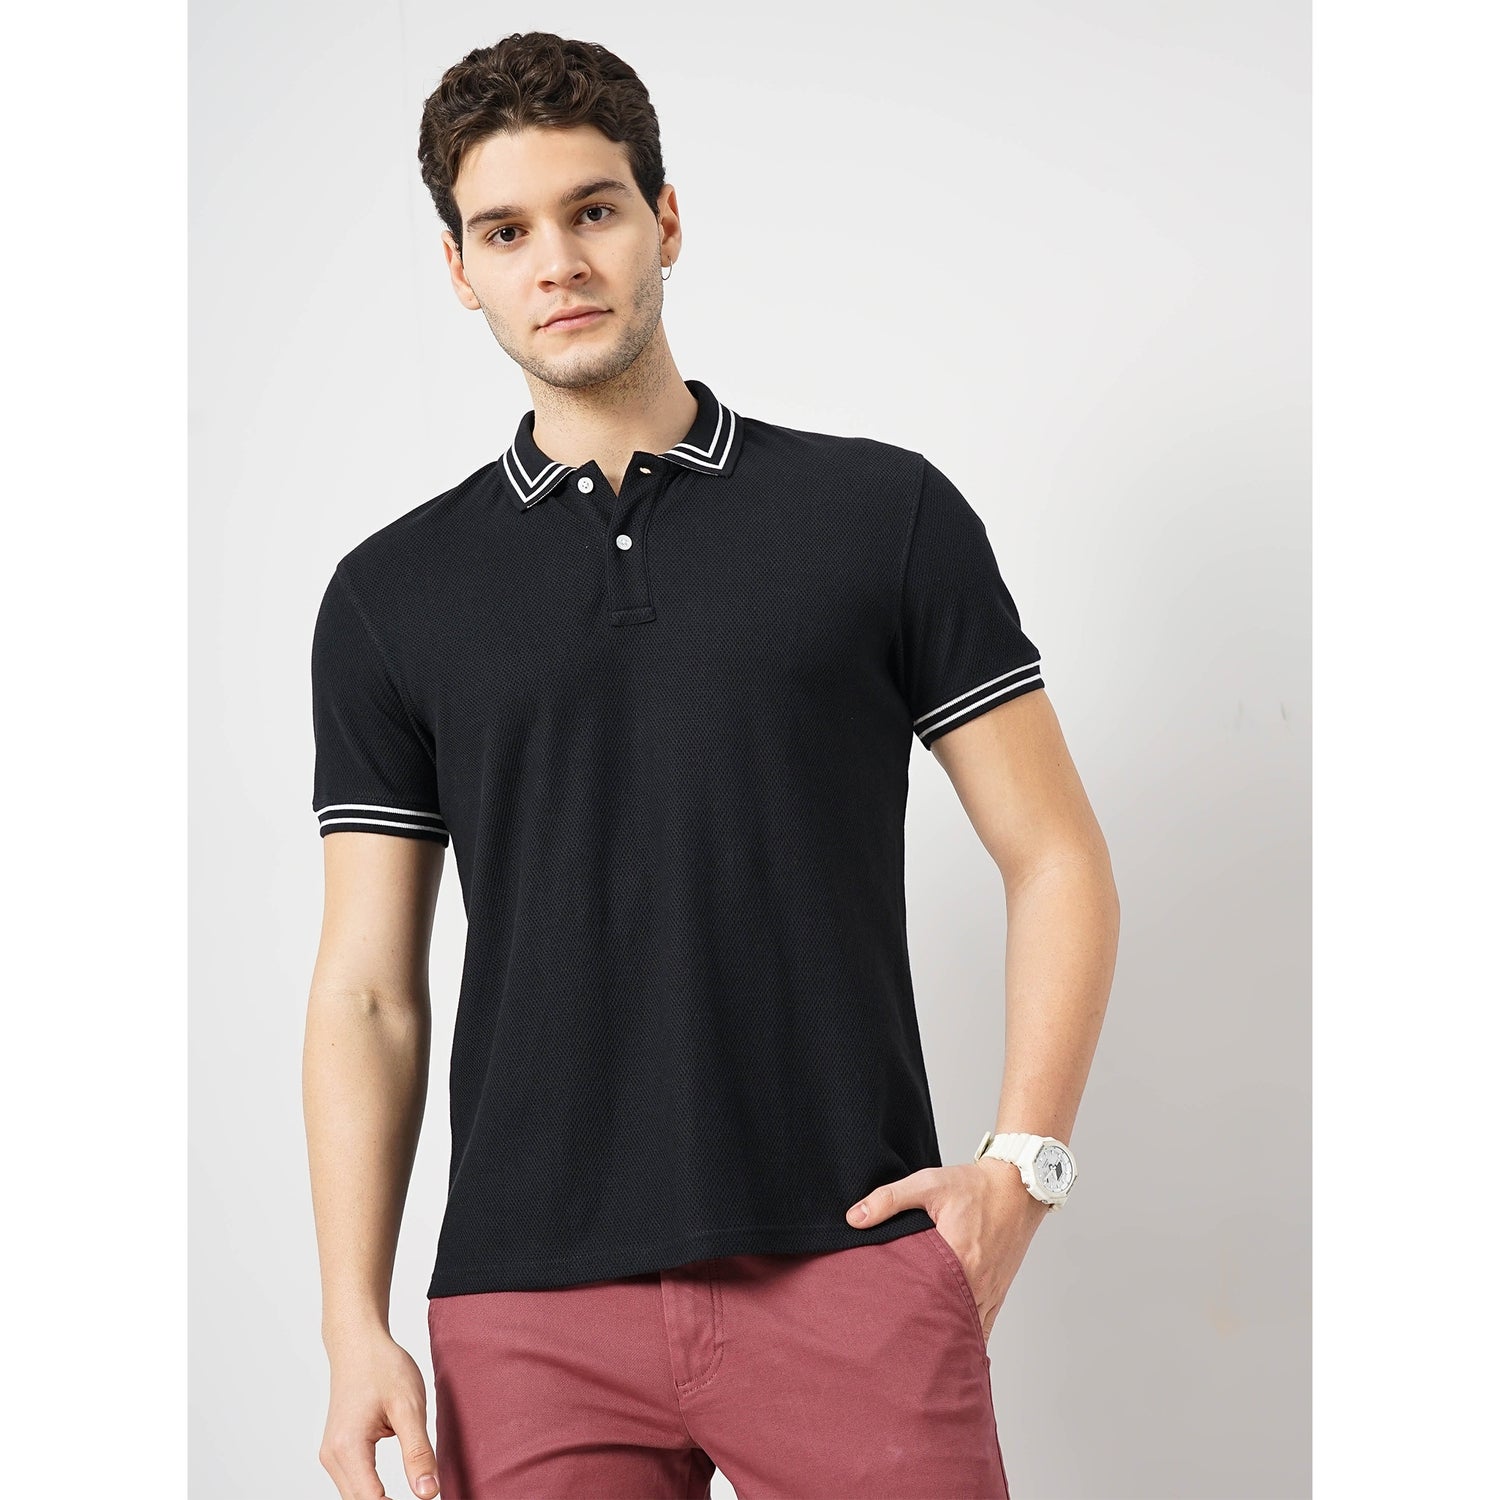 Men Black Solid Regular Fit Cotton Fashion Polo Tshirt (GETEX)